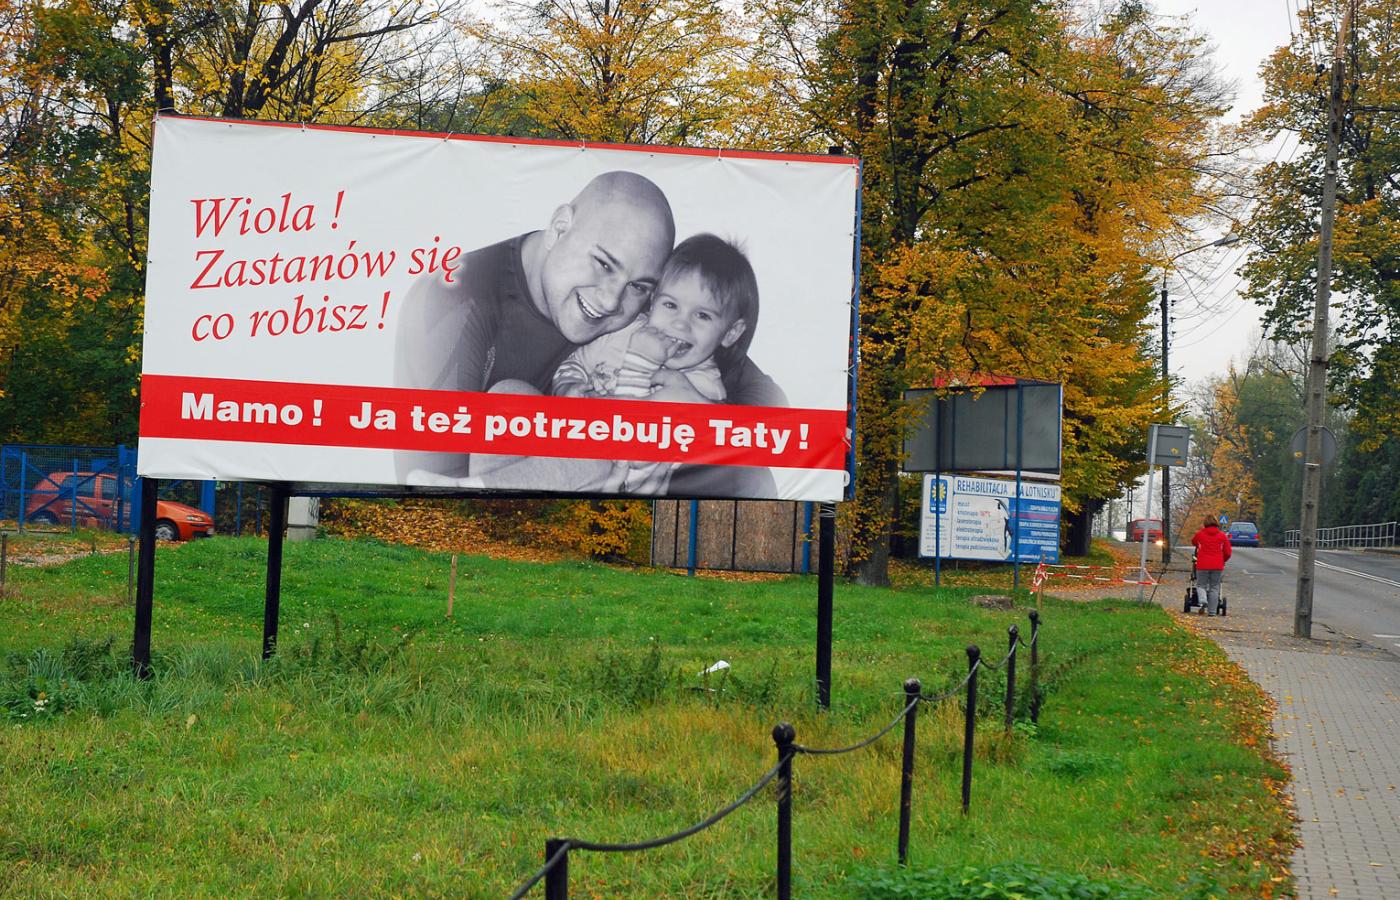 Radosław Siuda z Bielska-Białej, żeby przekonać żonę, by pozwoliła mu widywać się z córką, wynajął 6 billboardów przy głównej ulicy i umieścił na nich apel: „Wiola, zastanów się, co robisz”.